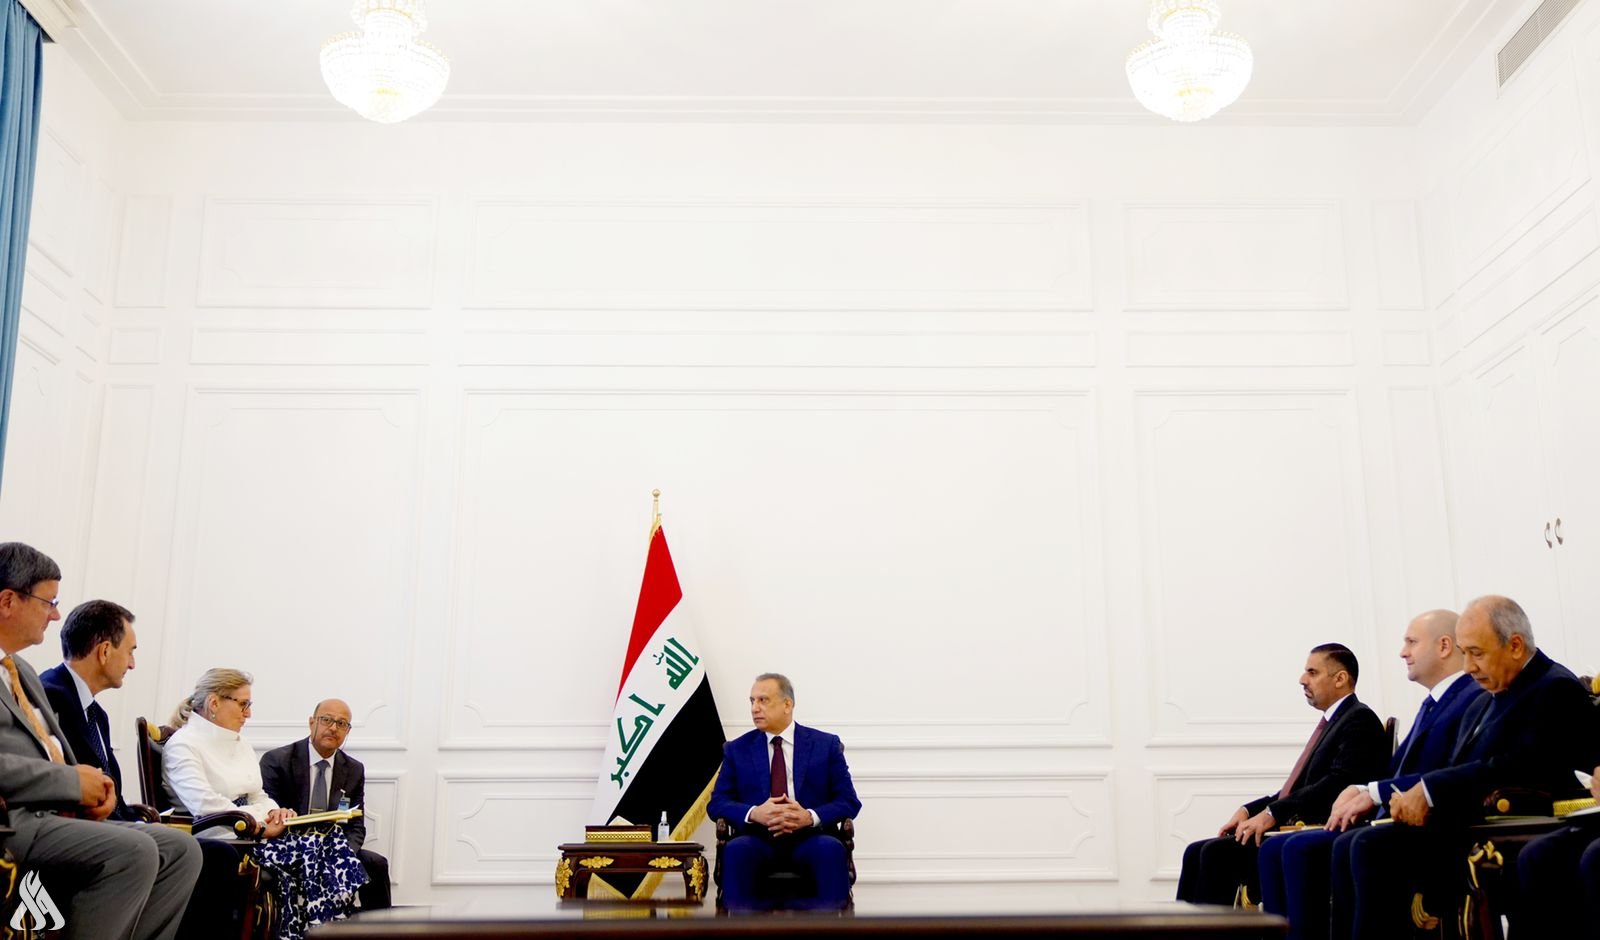 L’Irak attache une grande importance au partenariat avec la France » Agence de presse irakienne